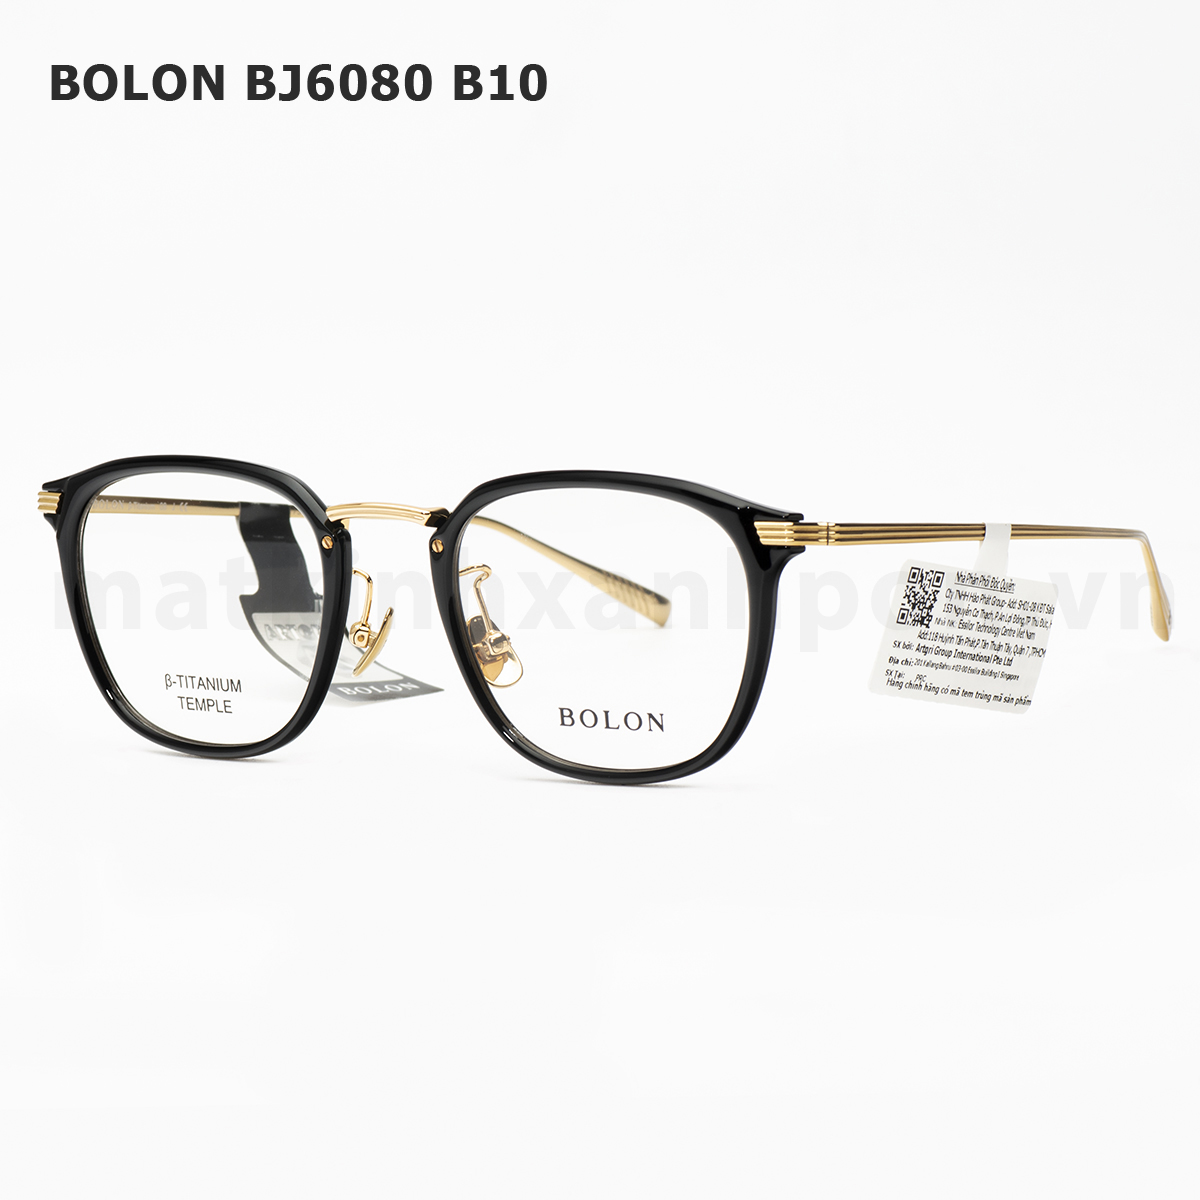 Bolon BJ6080 B10